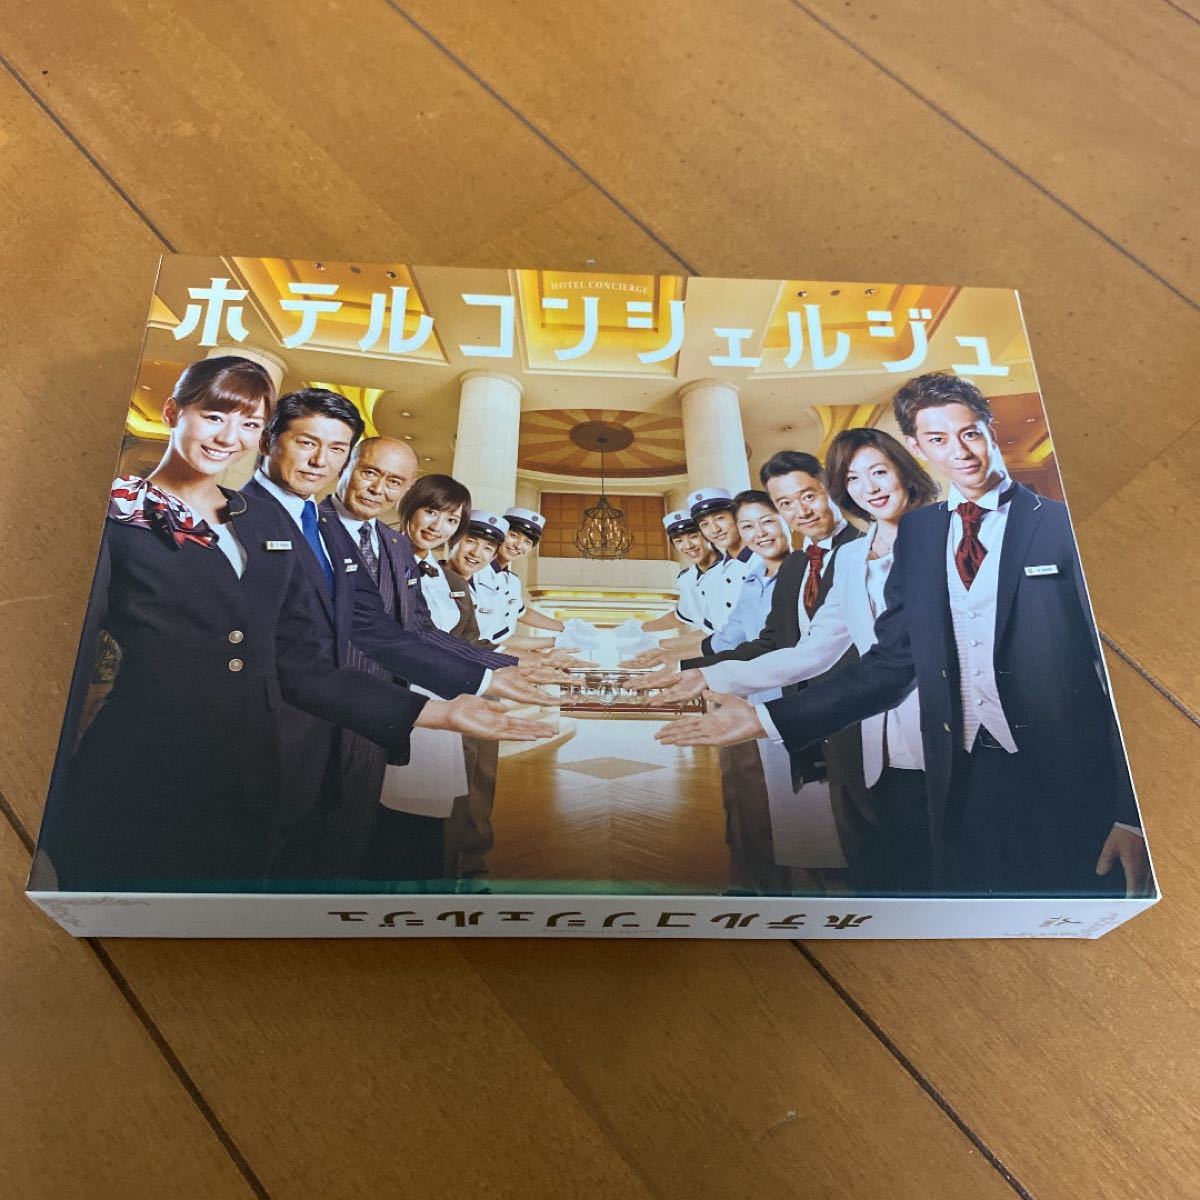 ホテルコンシェルジュ DVD-BOX〈5枚組〉西内まりや 三浦翔平 | 2018